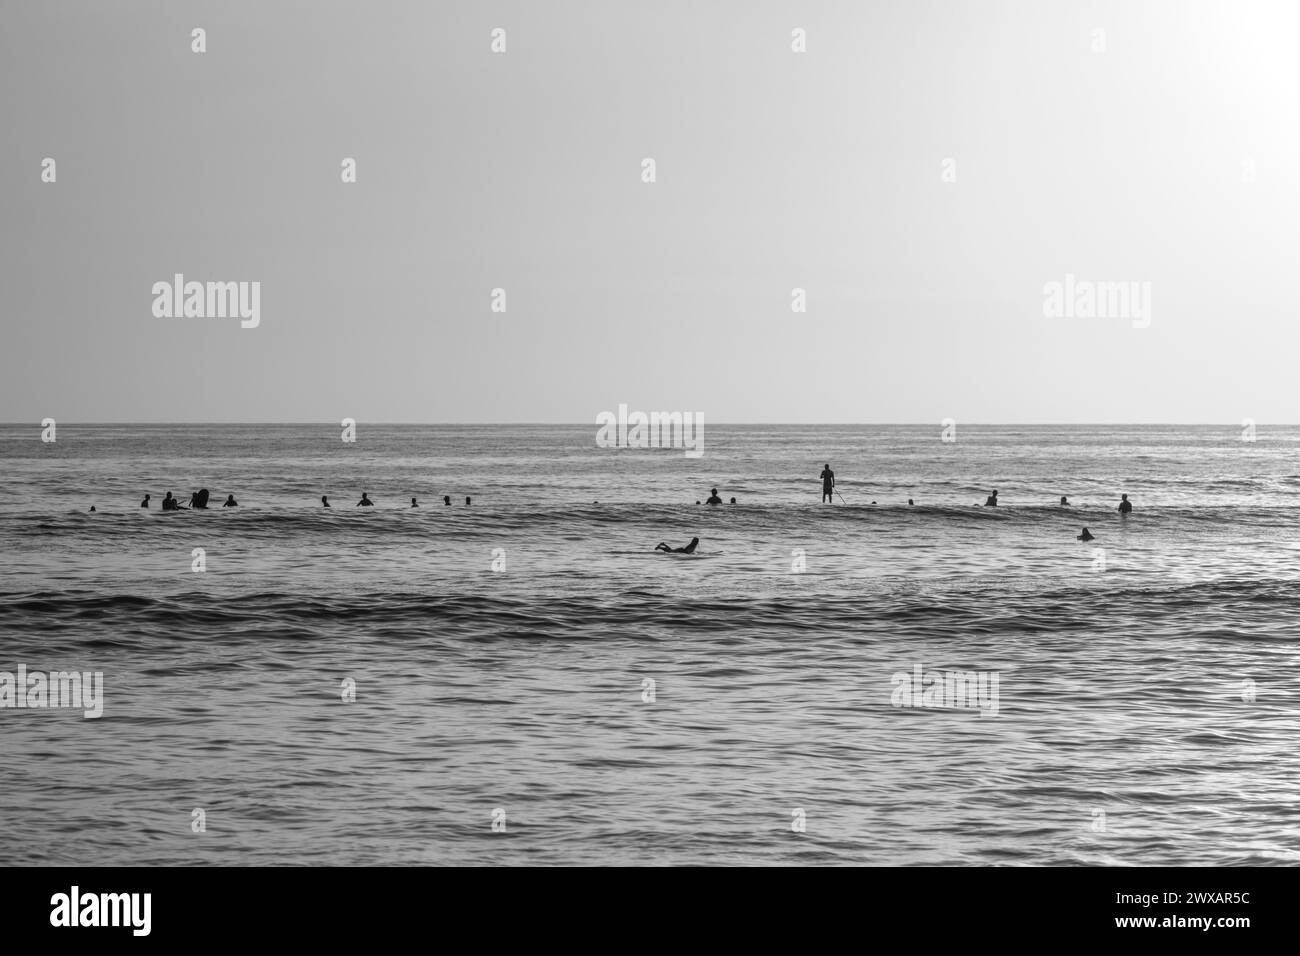 Une photo en niveaux de gris d'une ligne de surf sur une plage du Pacifique Nord à Guanacaste Costa Rica. Banque D'Images